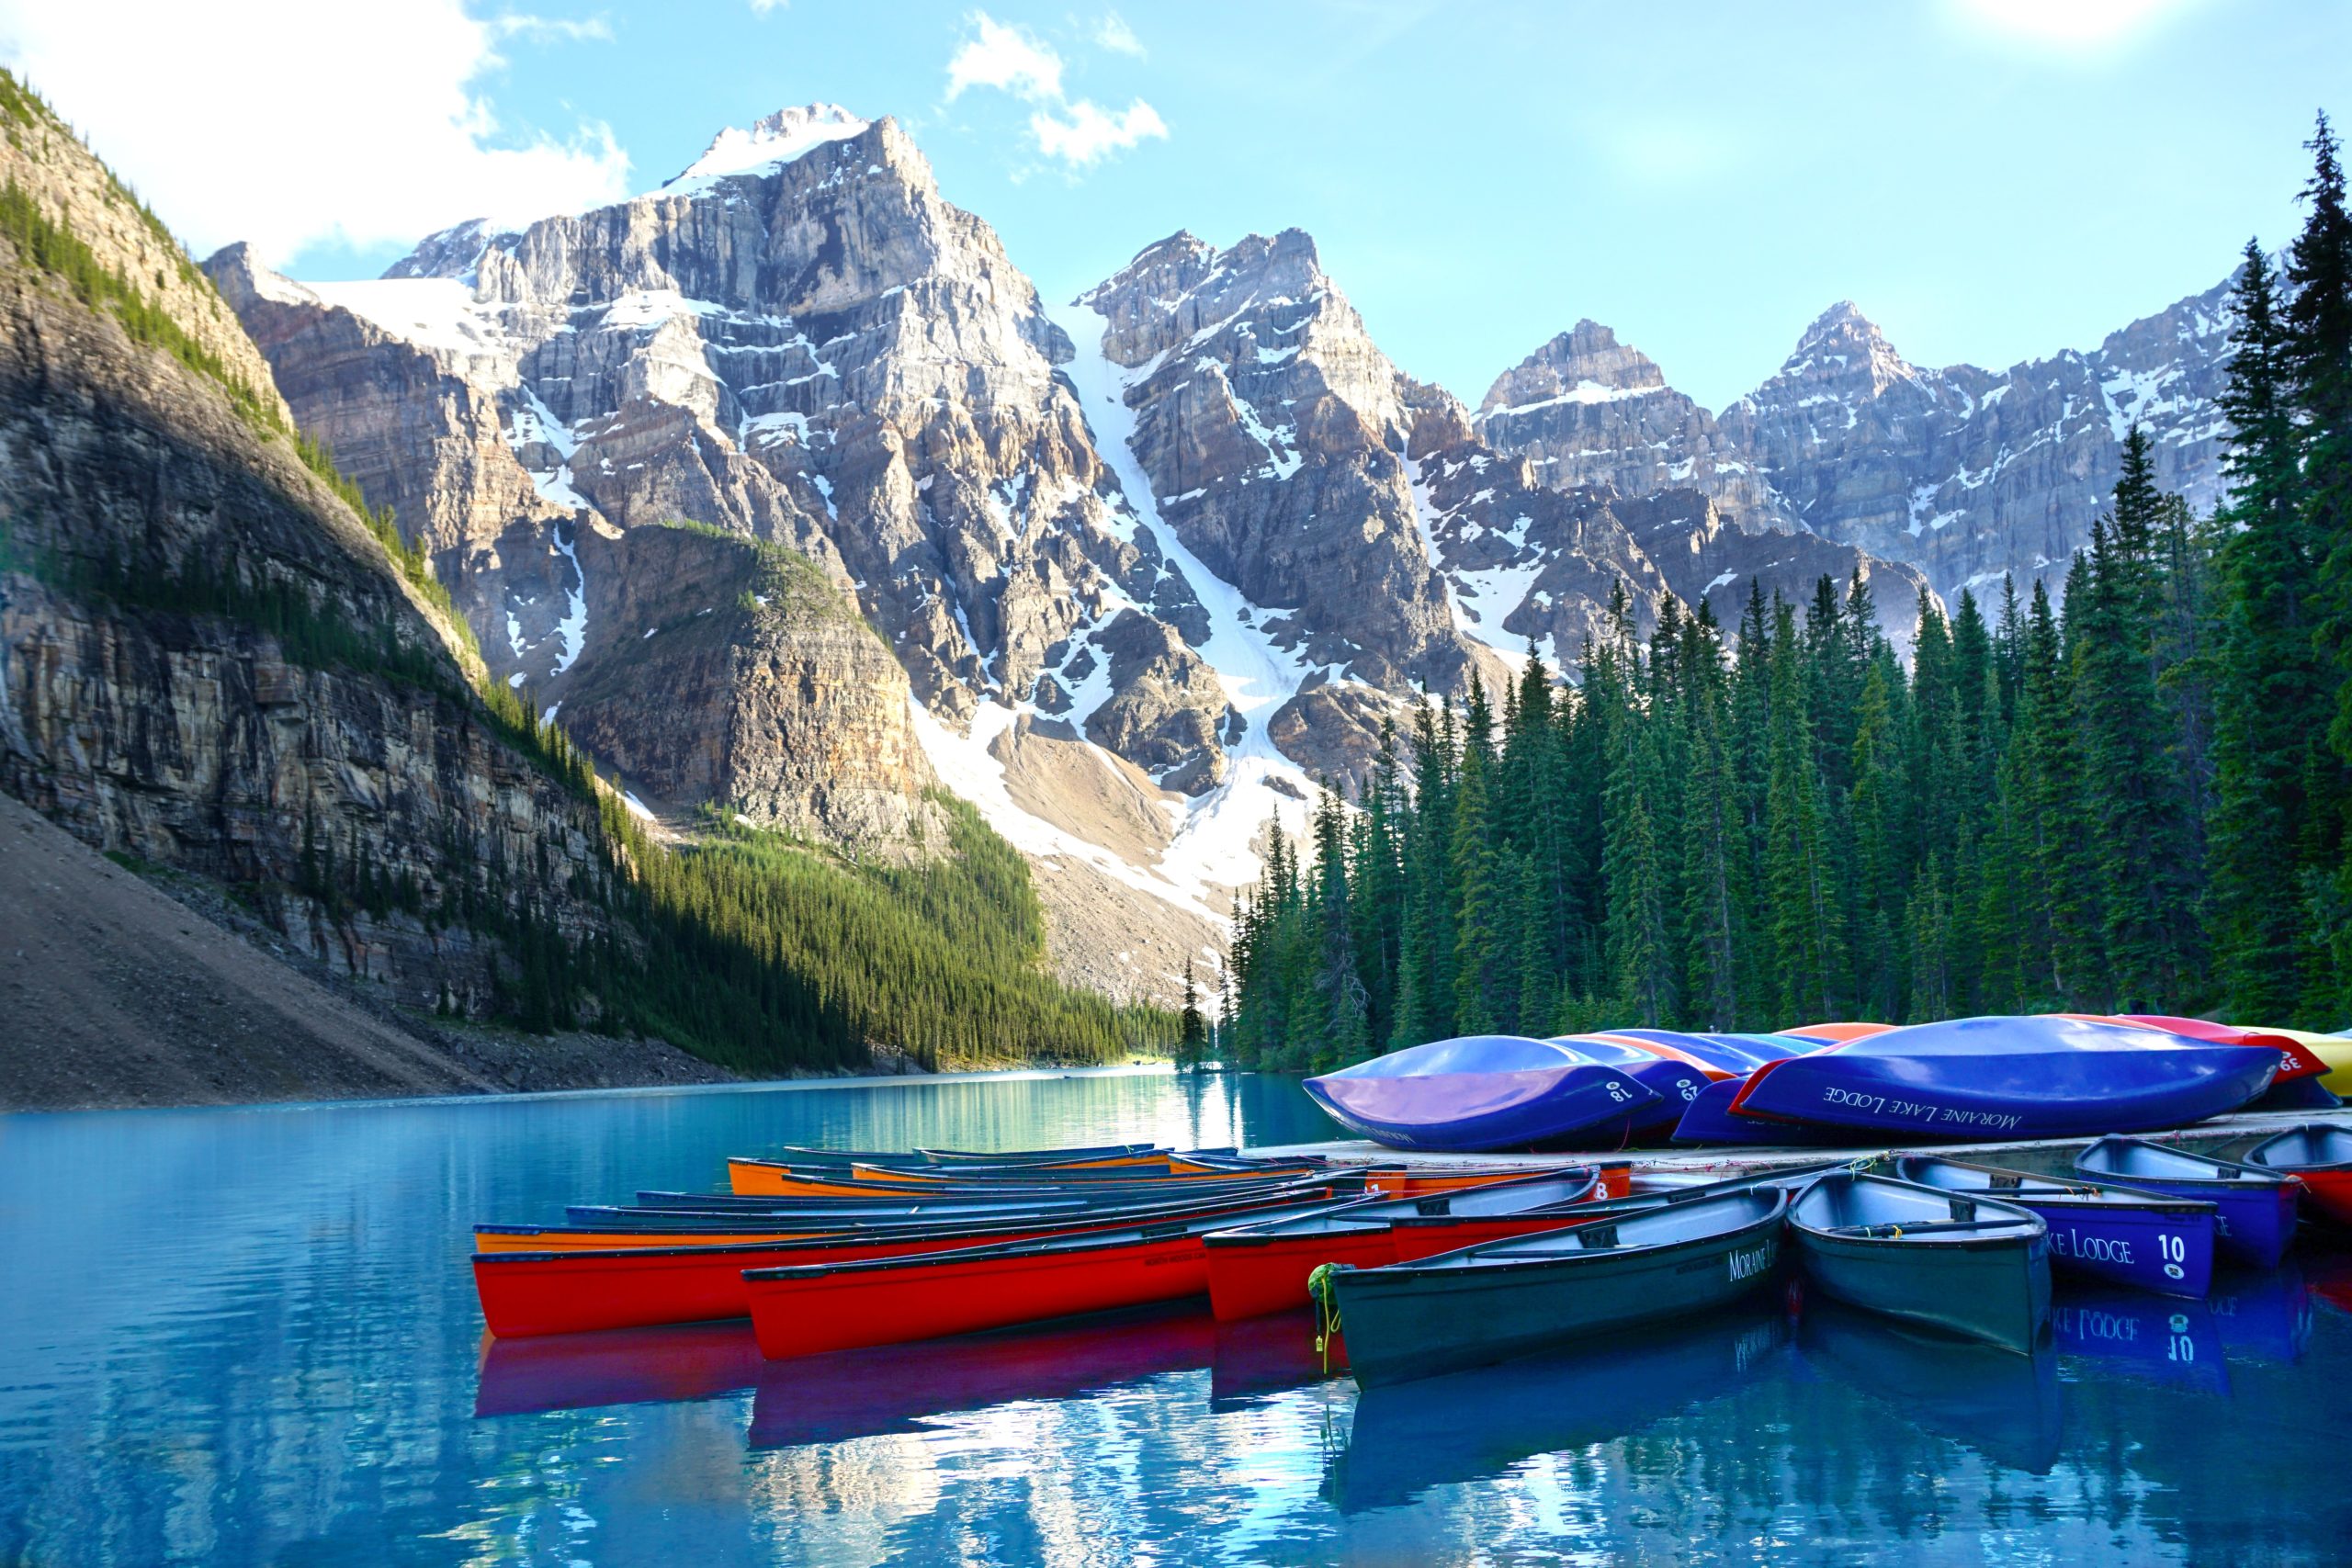 Canoas flotando en un lago azul prístino con imponentes montañas y árboles al fondo.